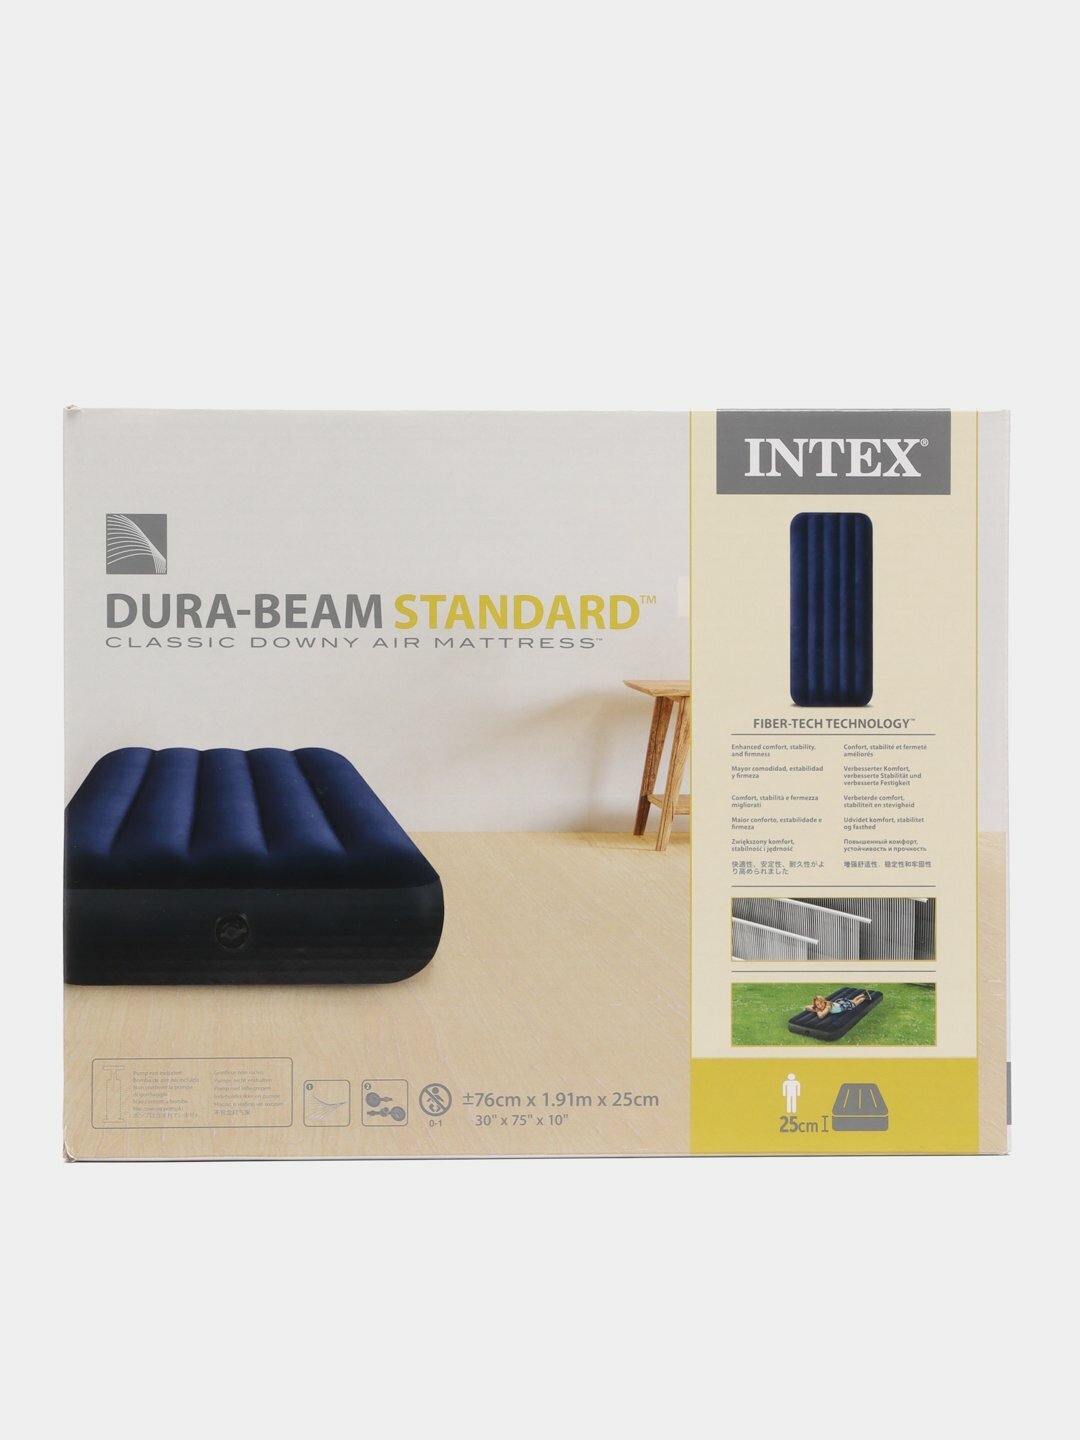 Надувной матрас кровать велюровый INTEX, интекс, с ремонтной заплаткой